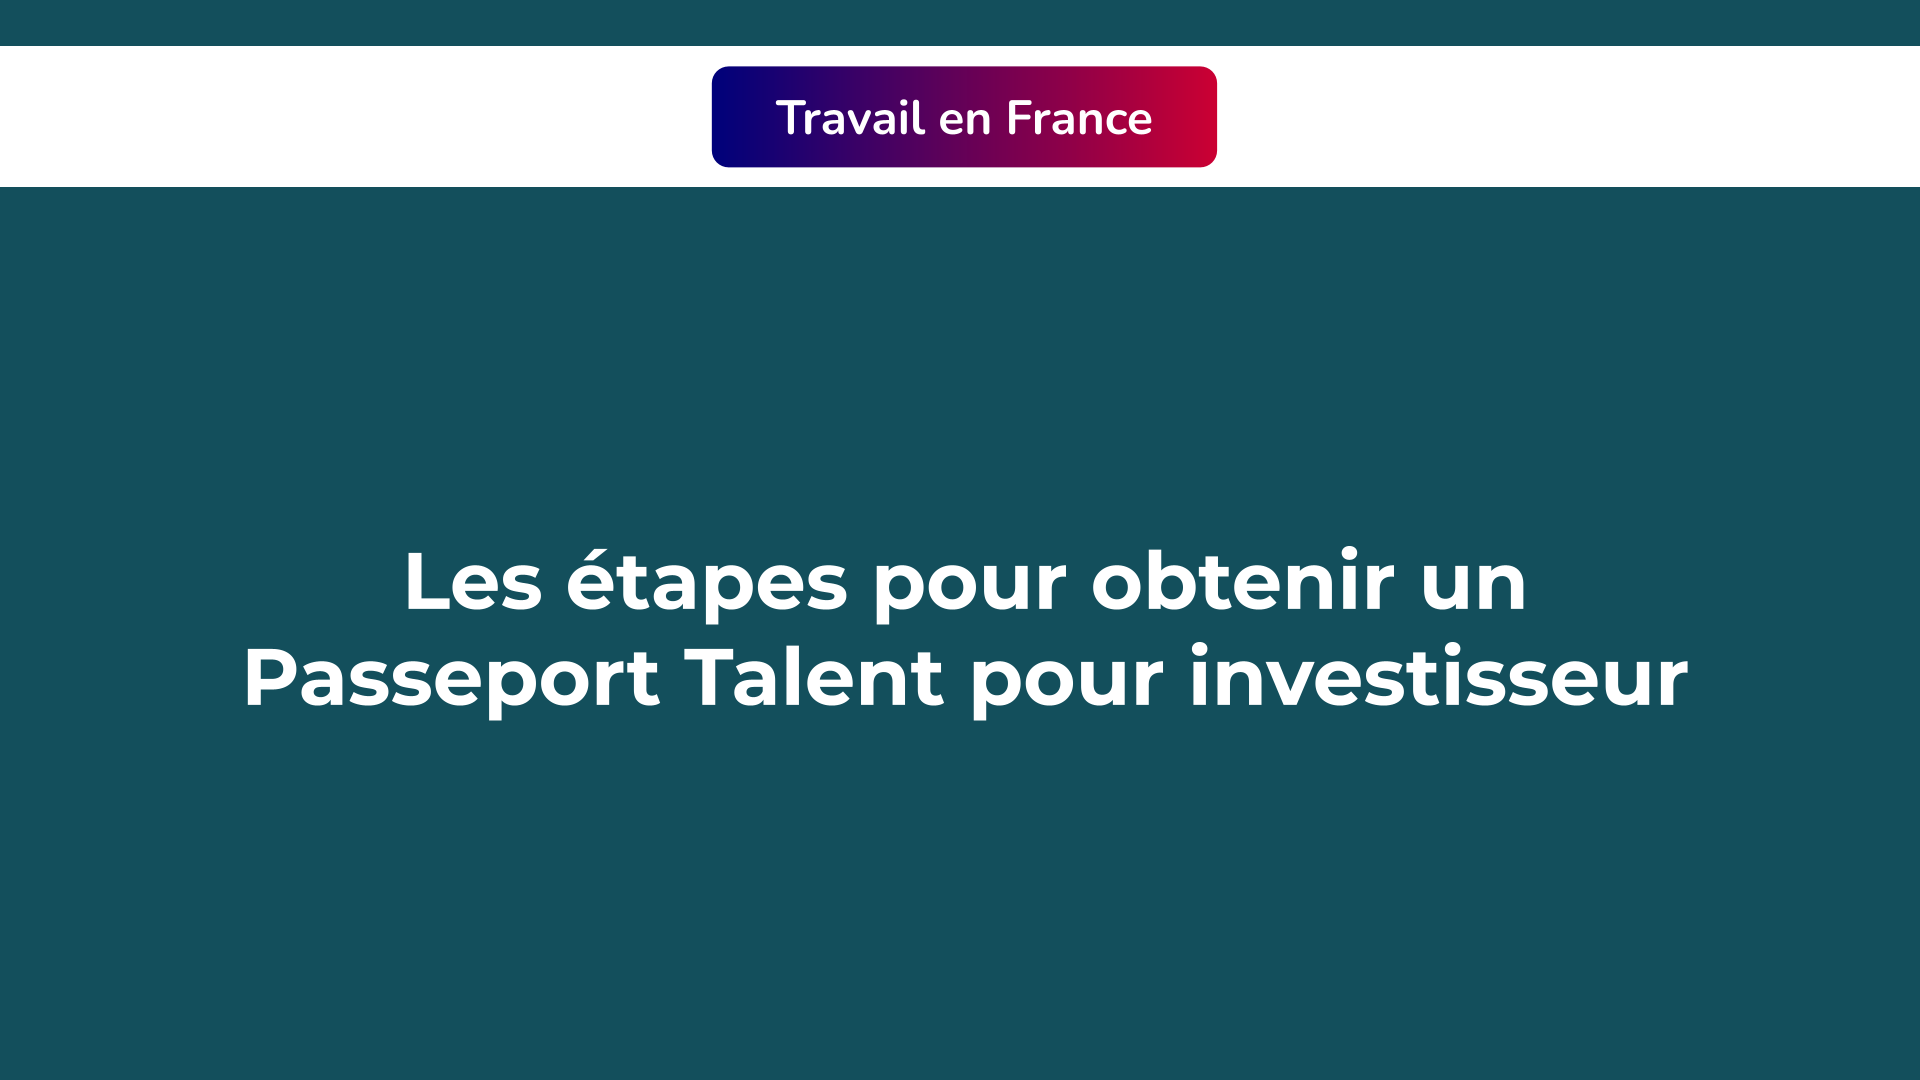 Passeport Talent pour investisseur